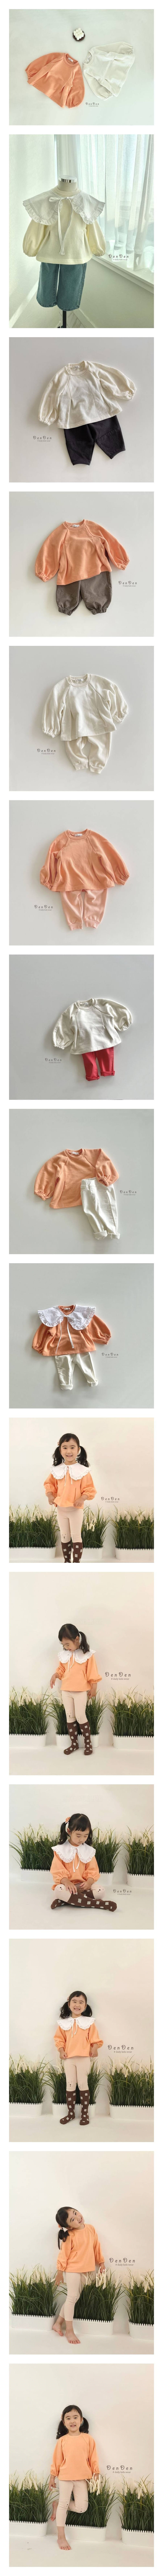 Denden - Korean Children Fashion - #todddlerfashion - Loni Puff Tee